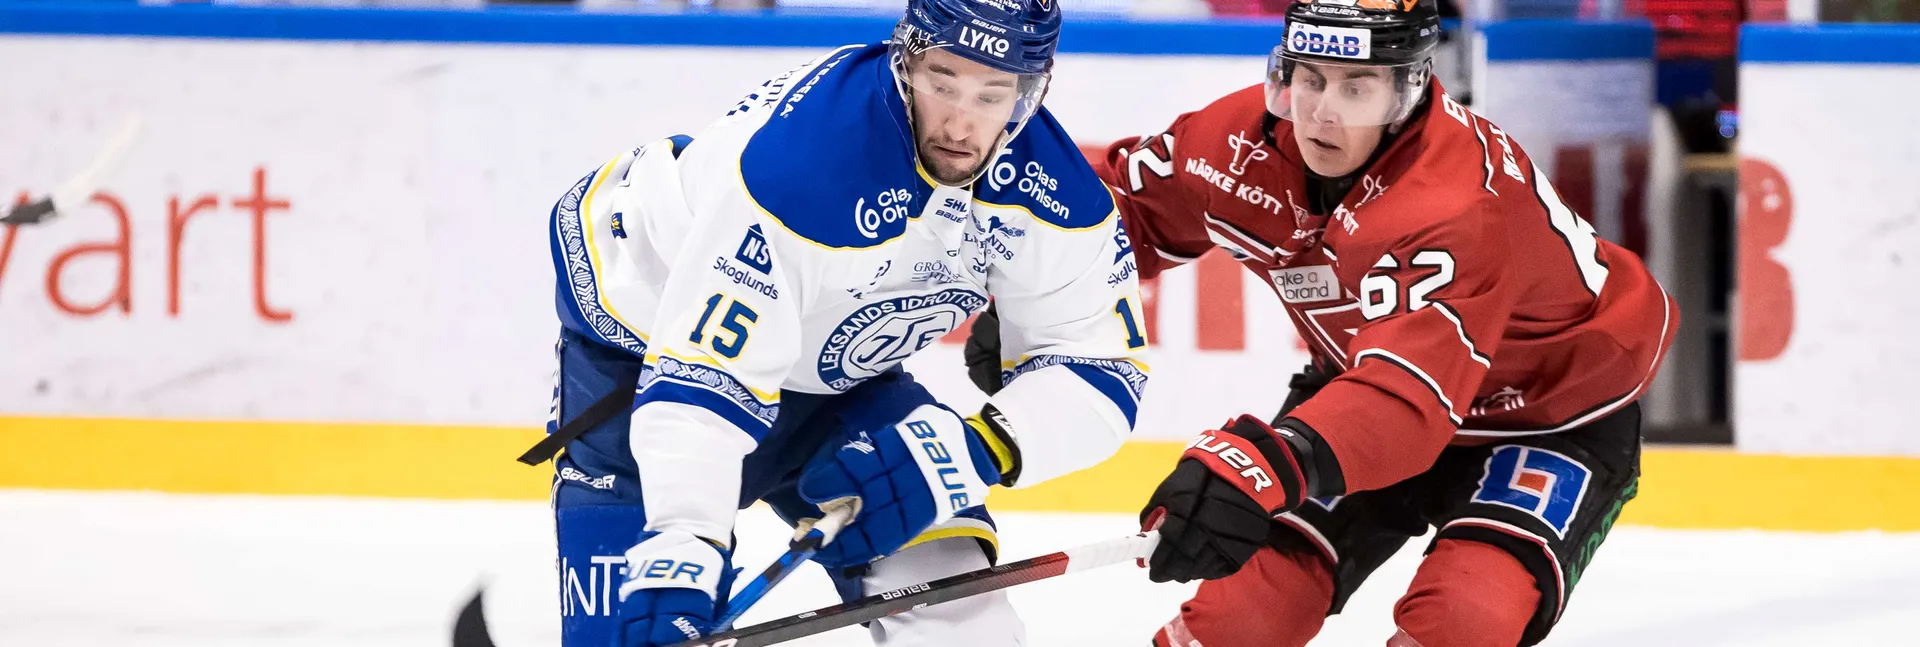 Ishockeymatch mellan Leksand och Örebro i SHL